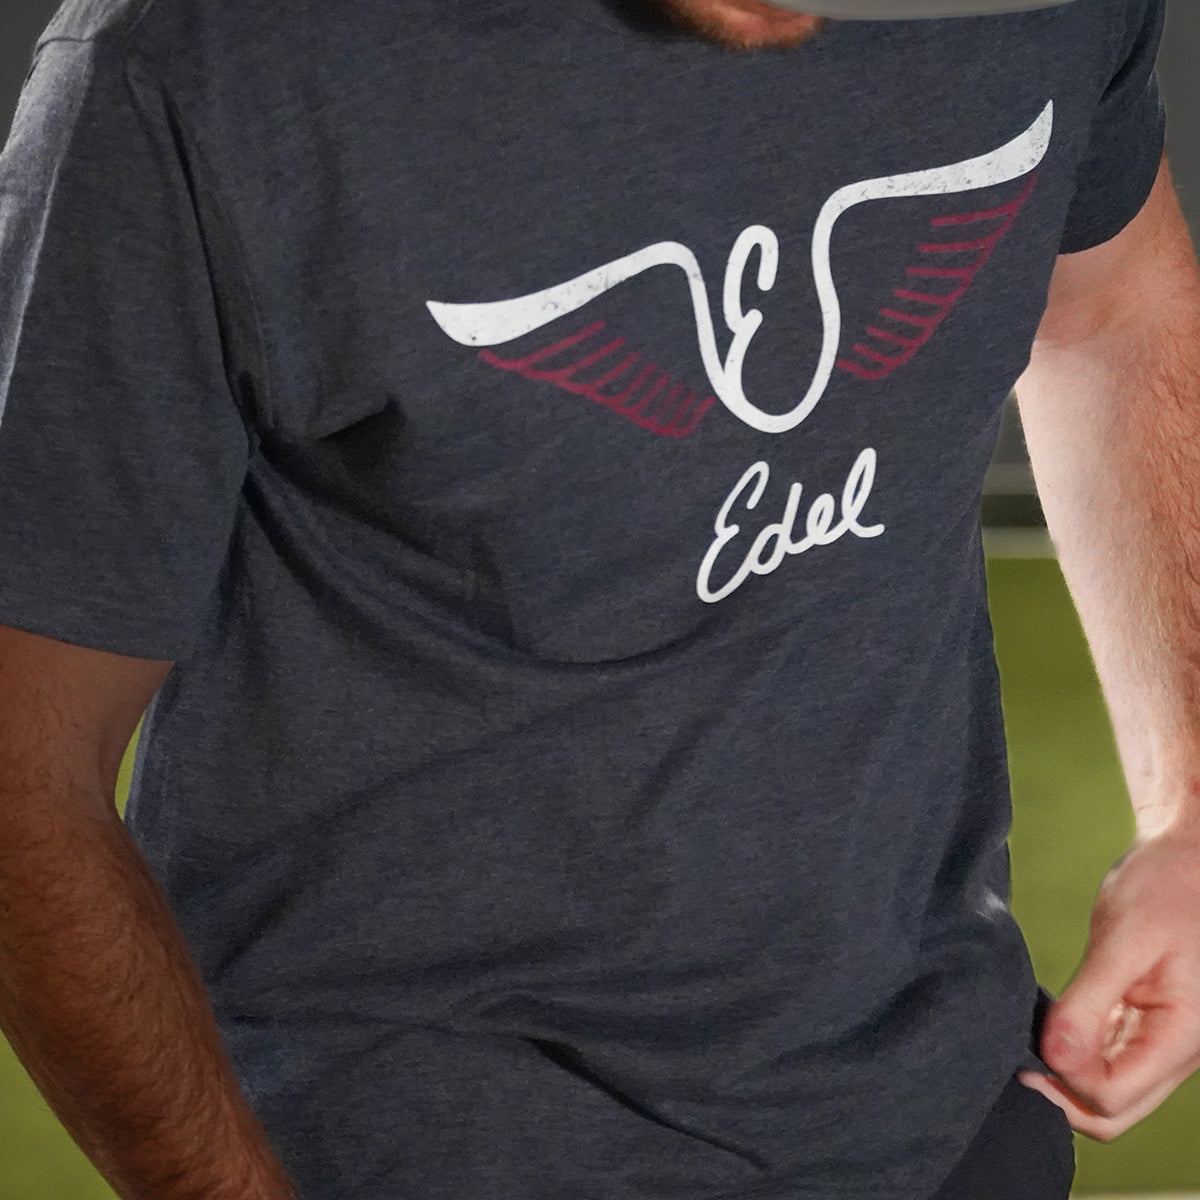 Edel Golf Wings Logo Tee